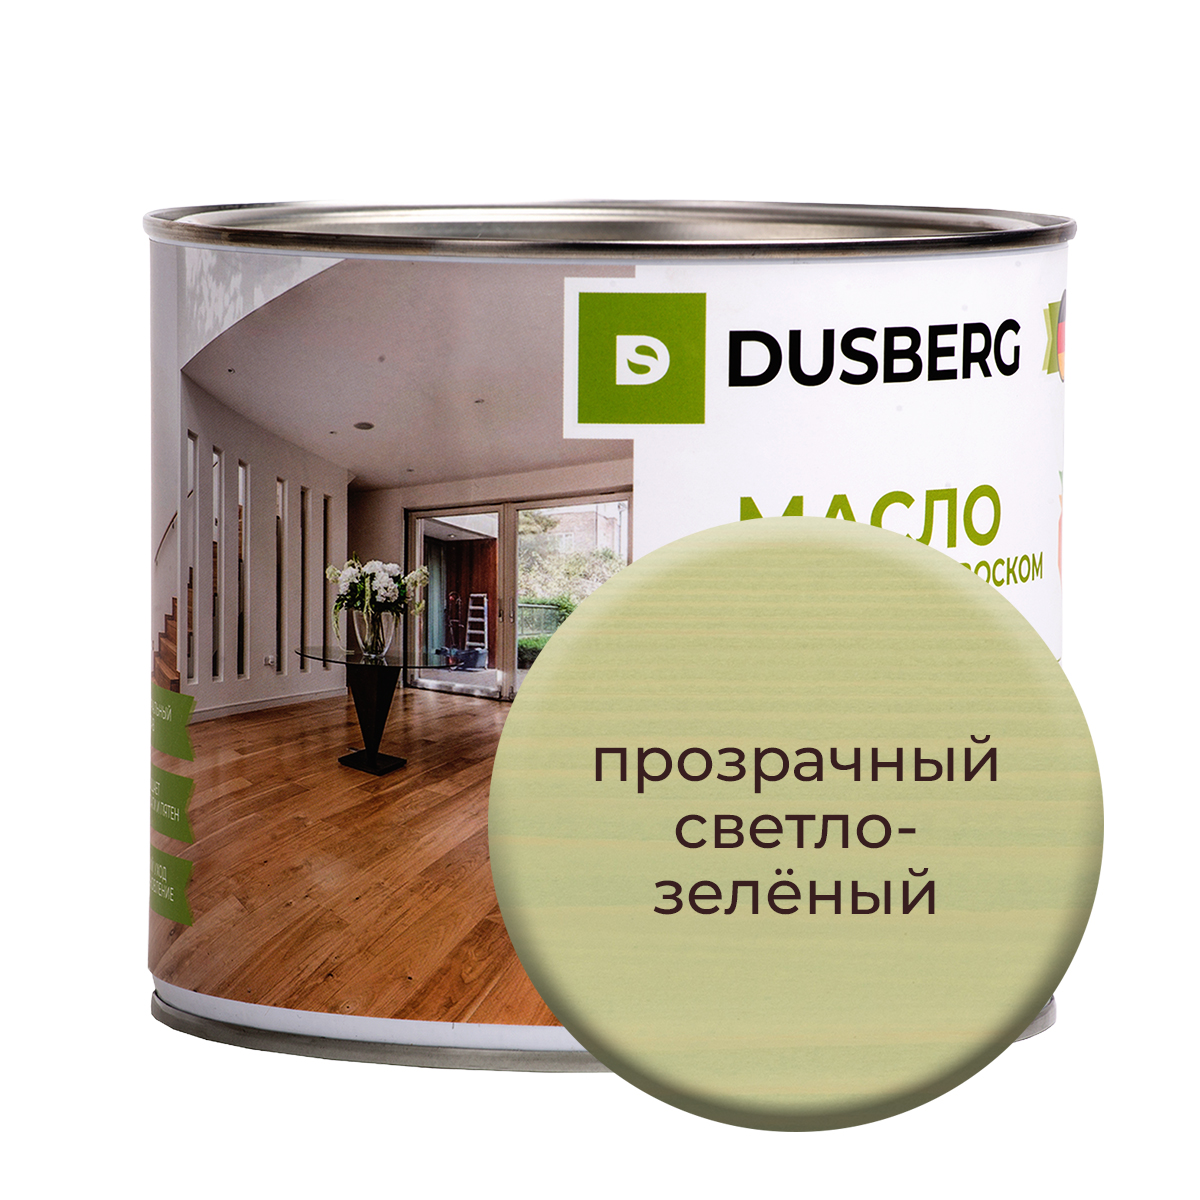 Масло Dusberg для стен на бесцветной основе, 750 мл Прозрачный светло-зеленый масло dusberg для стен на бесцветной основе 750 мл прозрачный светло зеленый